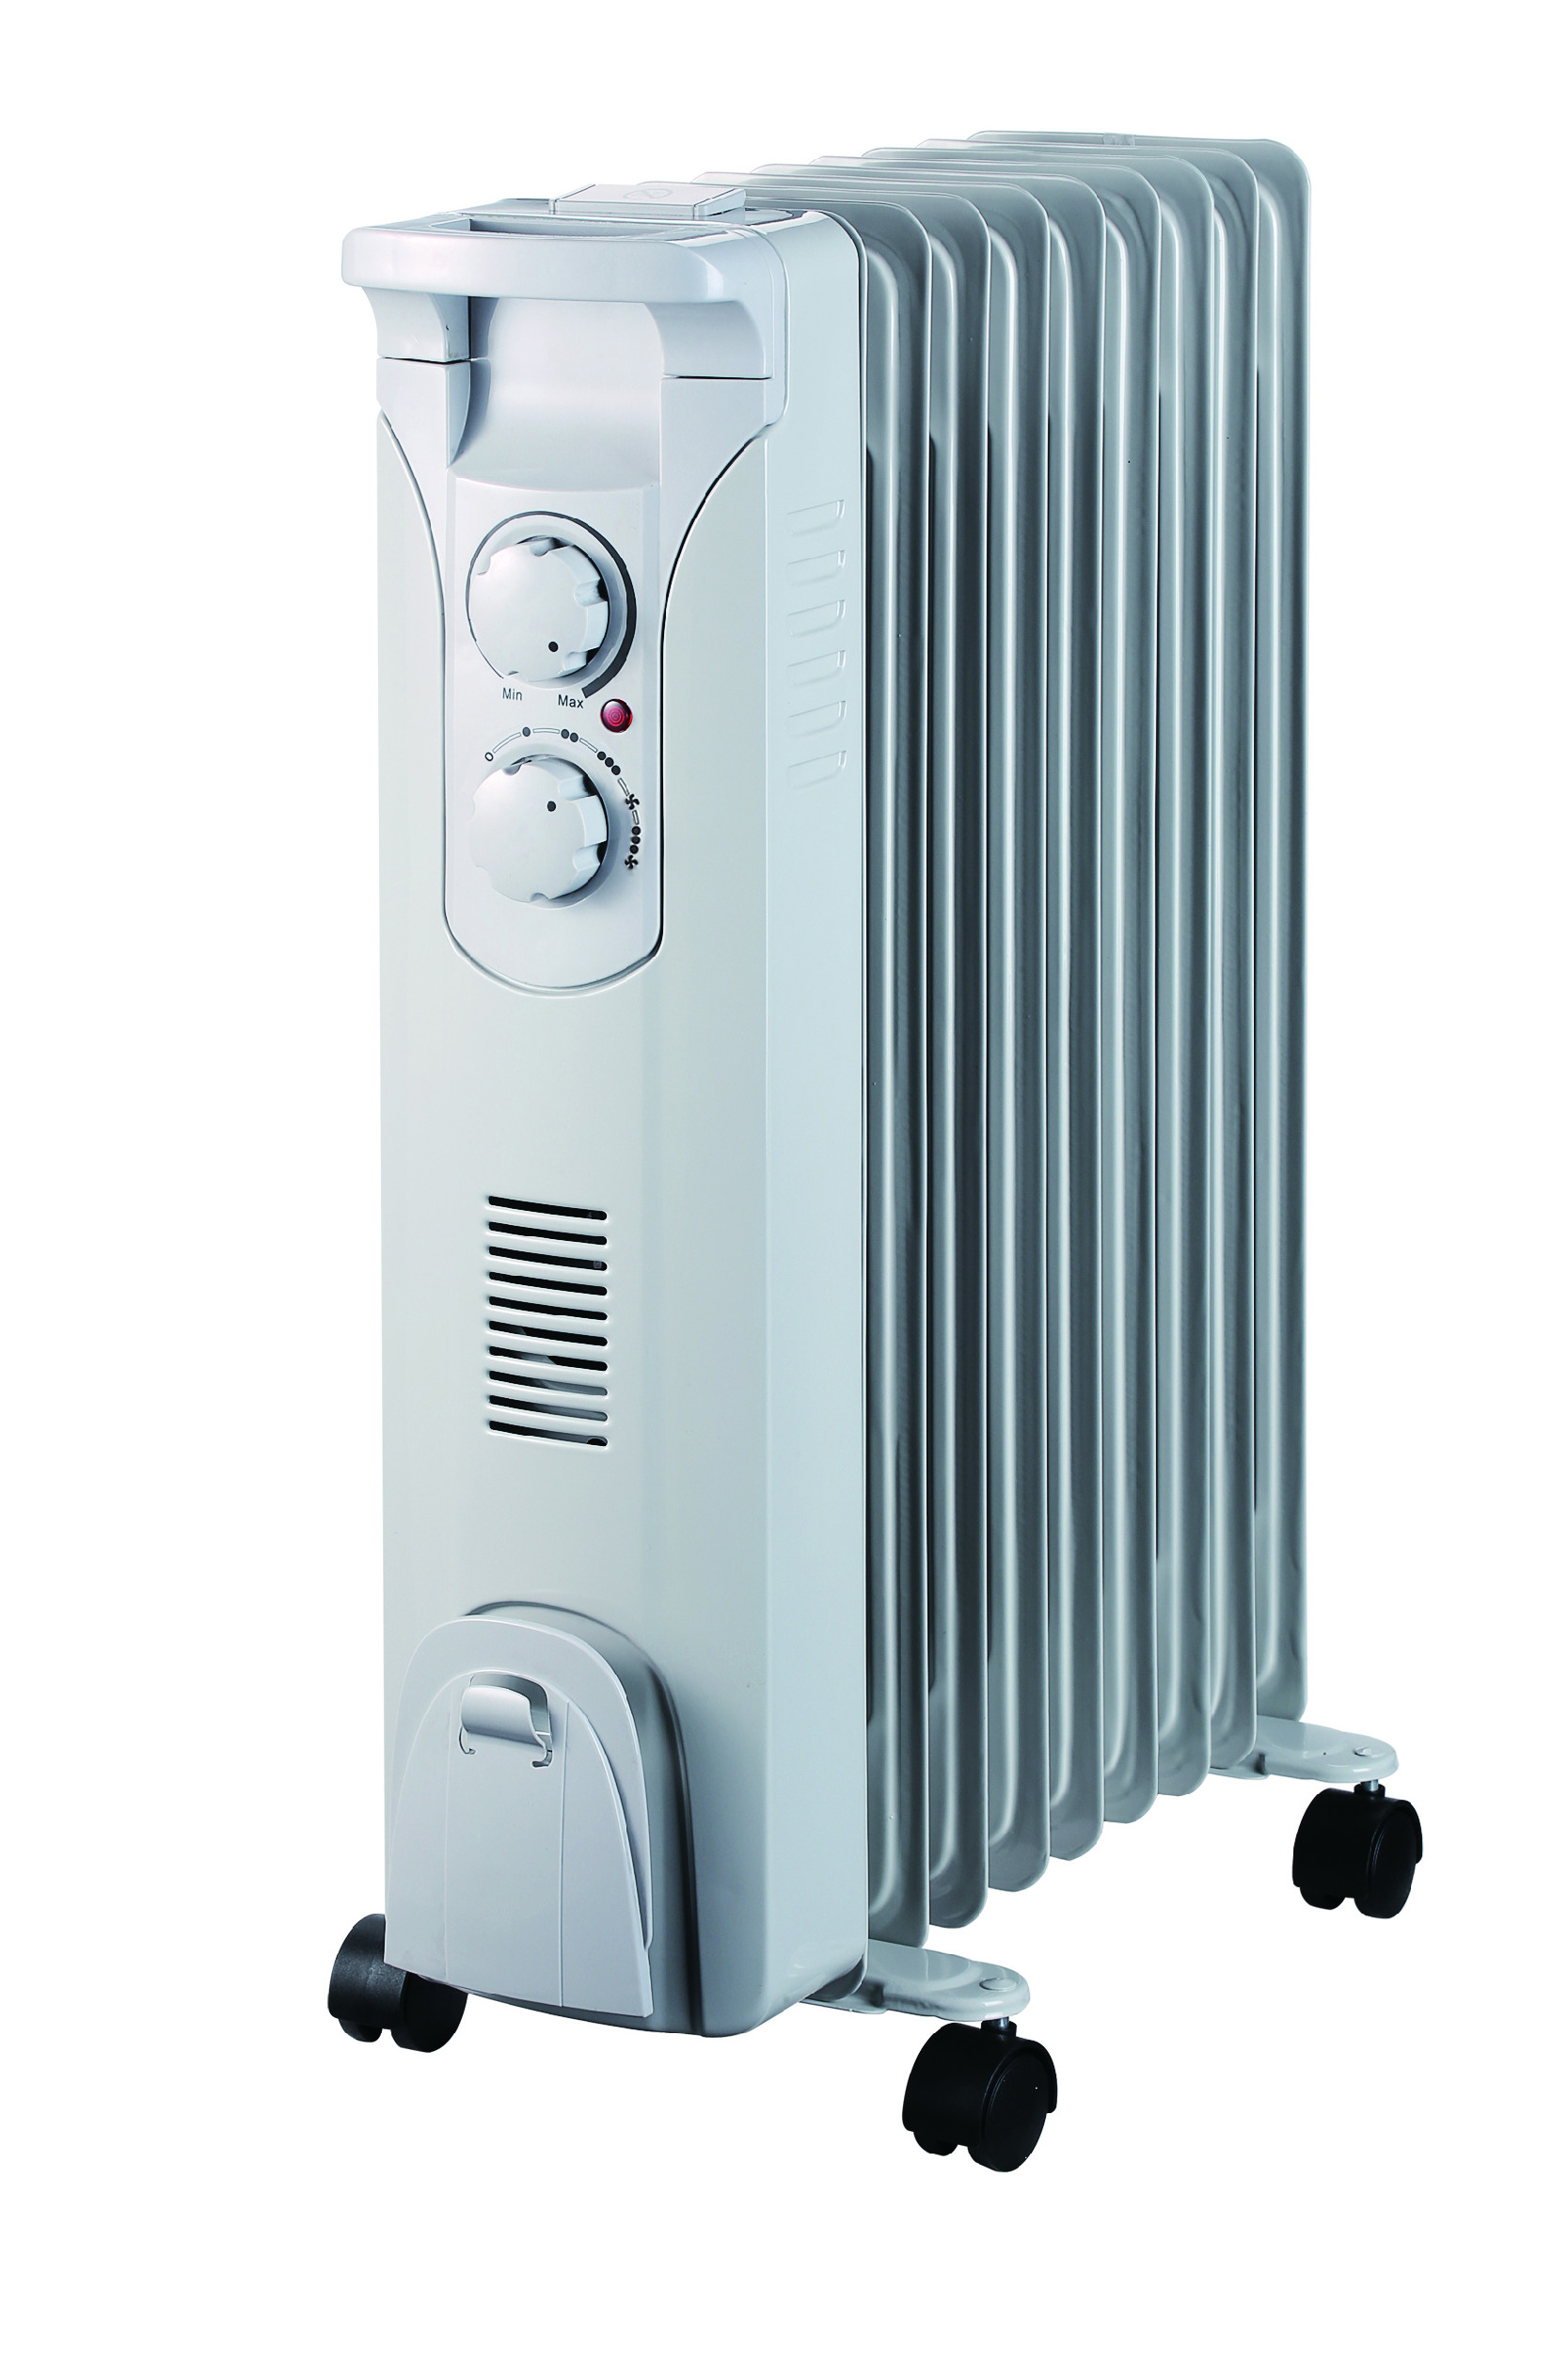 Olejový radiátor 2000W+ventilátor 400W DESCON DA-J2052F + Dárek, servis bez starostí v hodnotě 300Kč